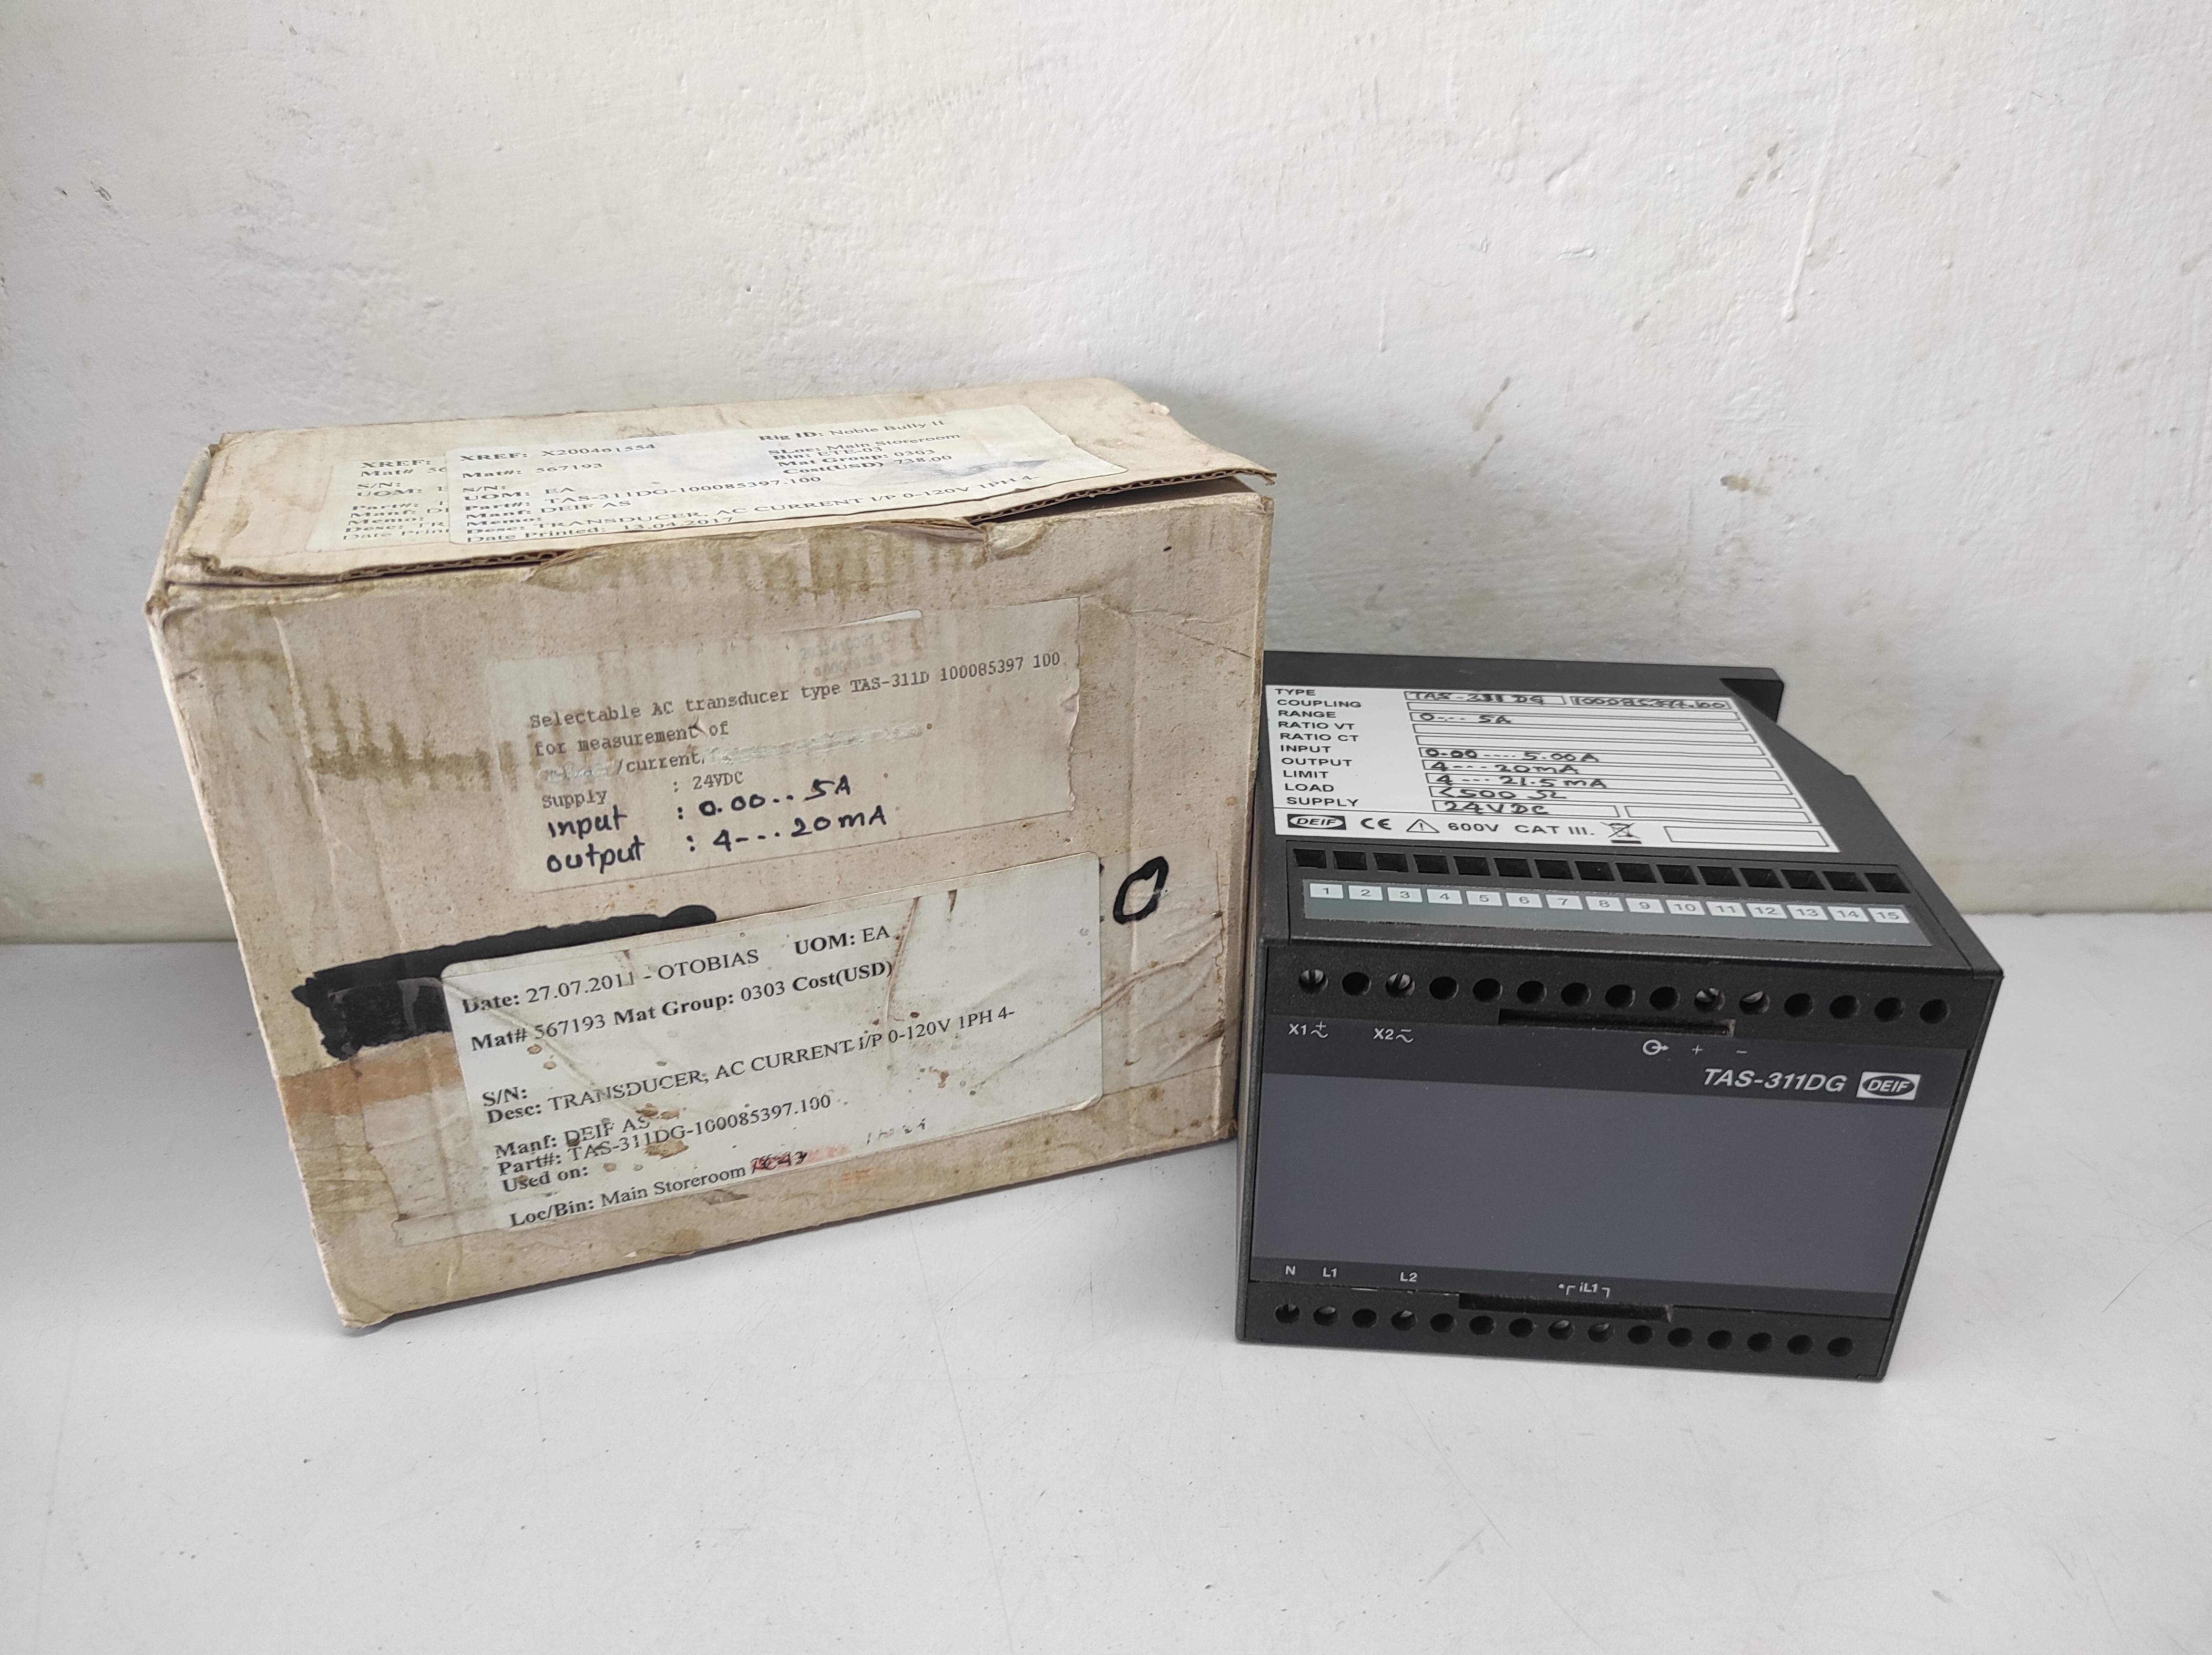 Deif TAS-311DG 100085397.100 Current Transducer